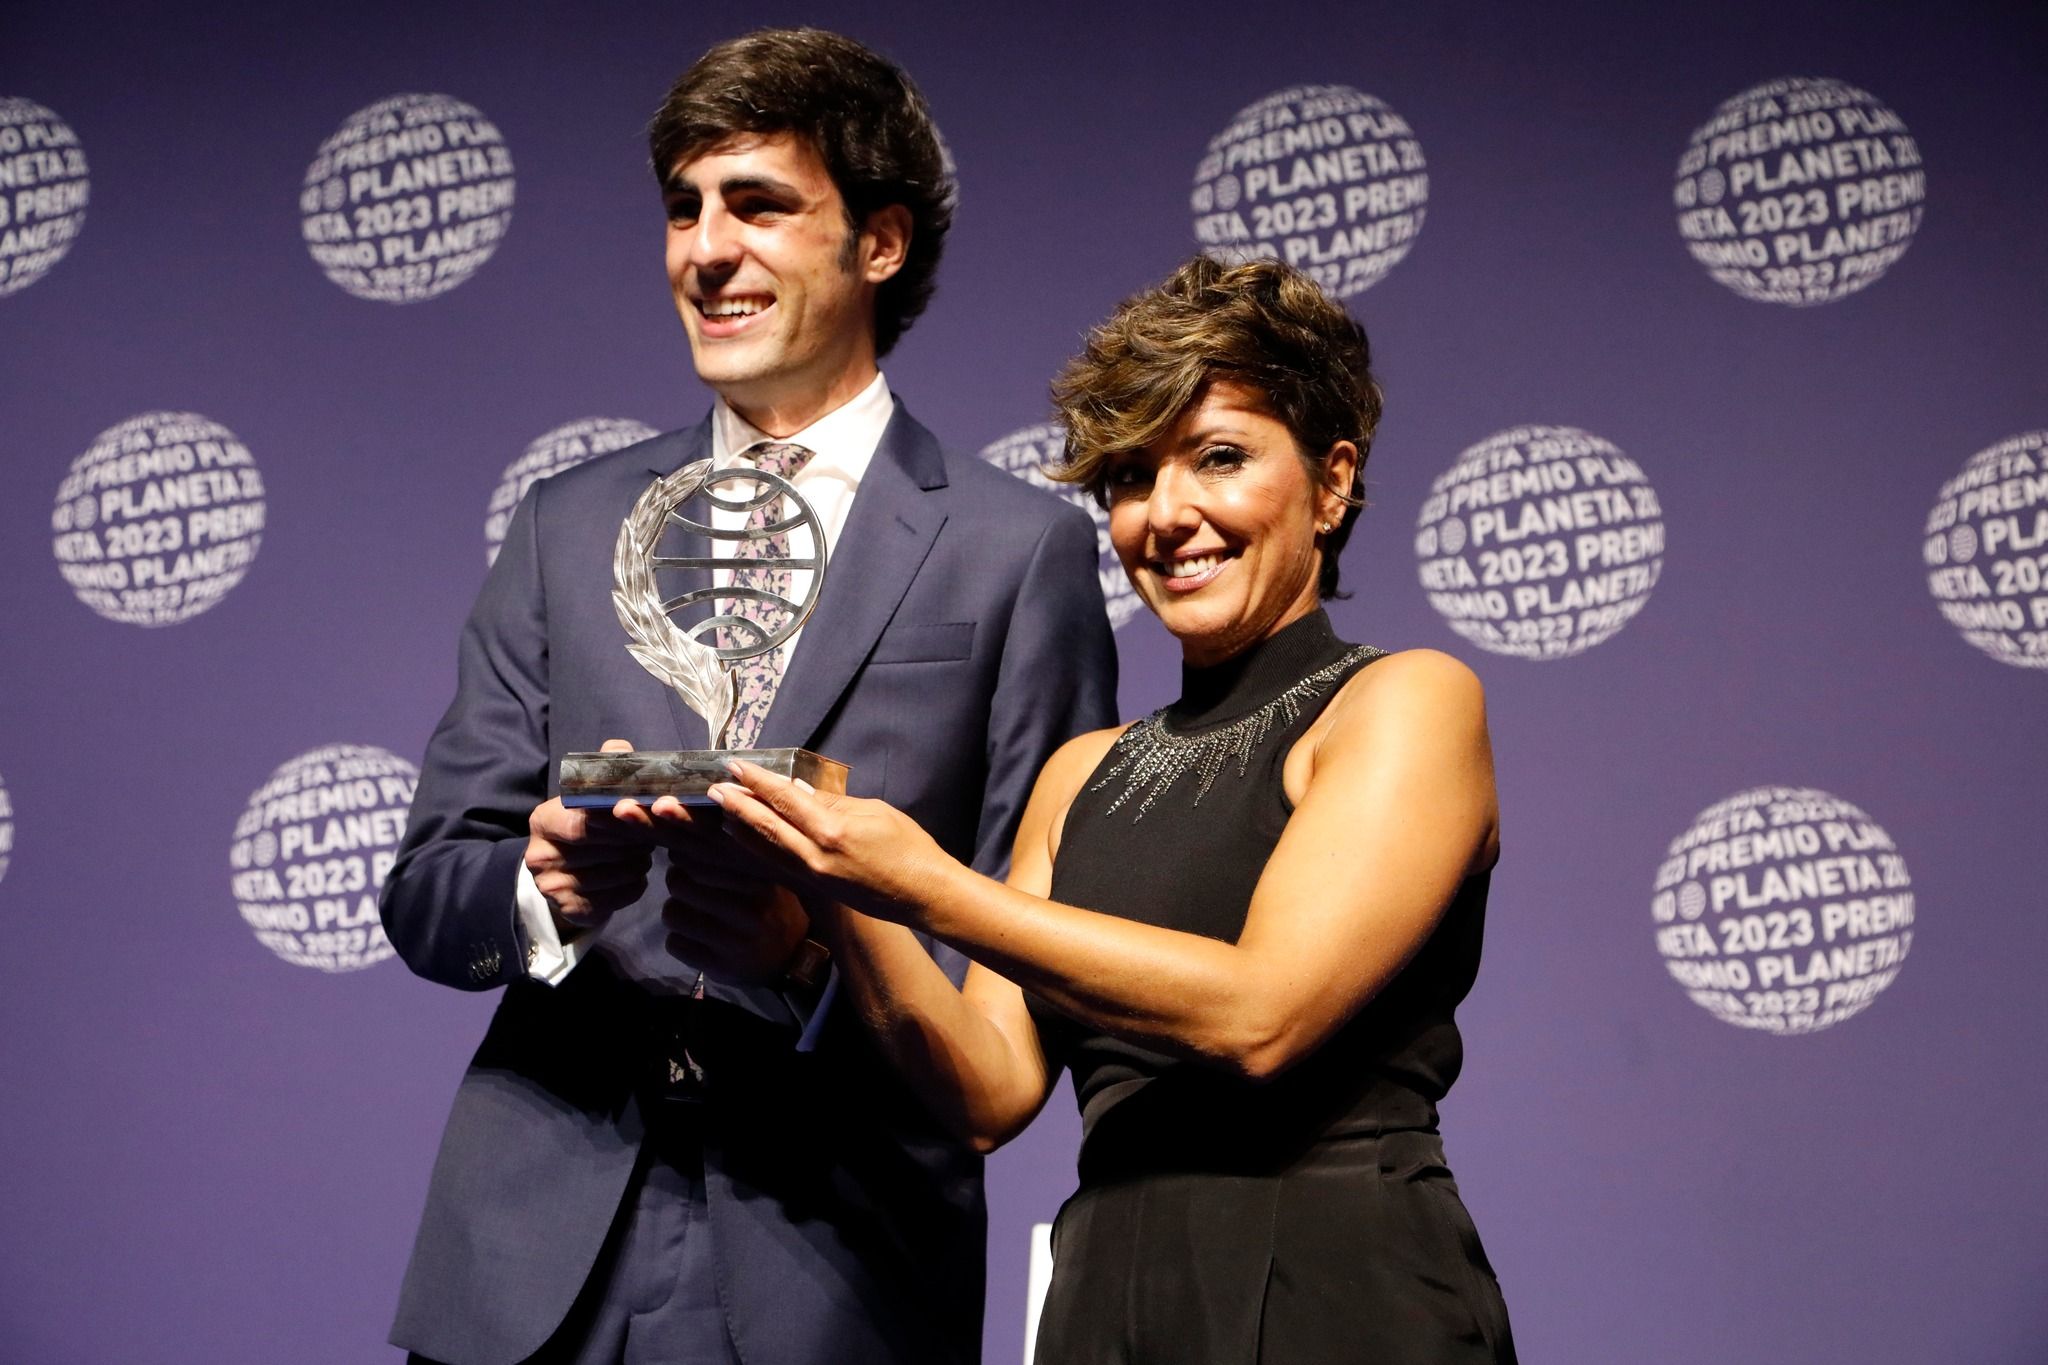 Sonsoles Ónega posa con el Premio Planeta en sus manos, en una imagen del grupo editorial.